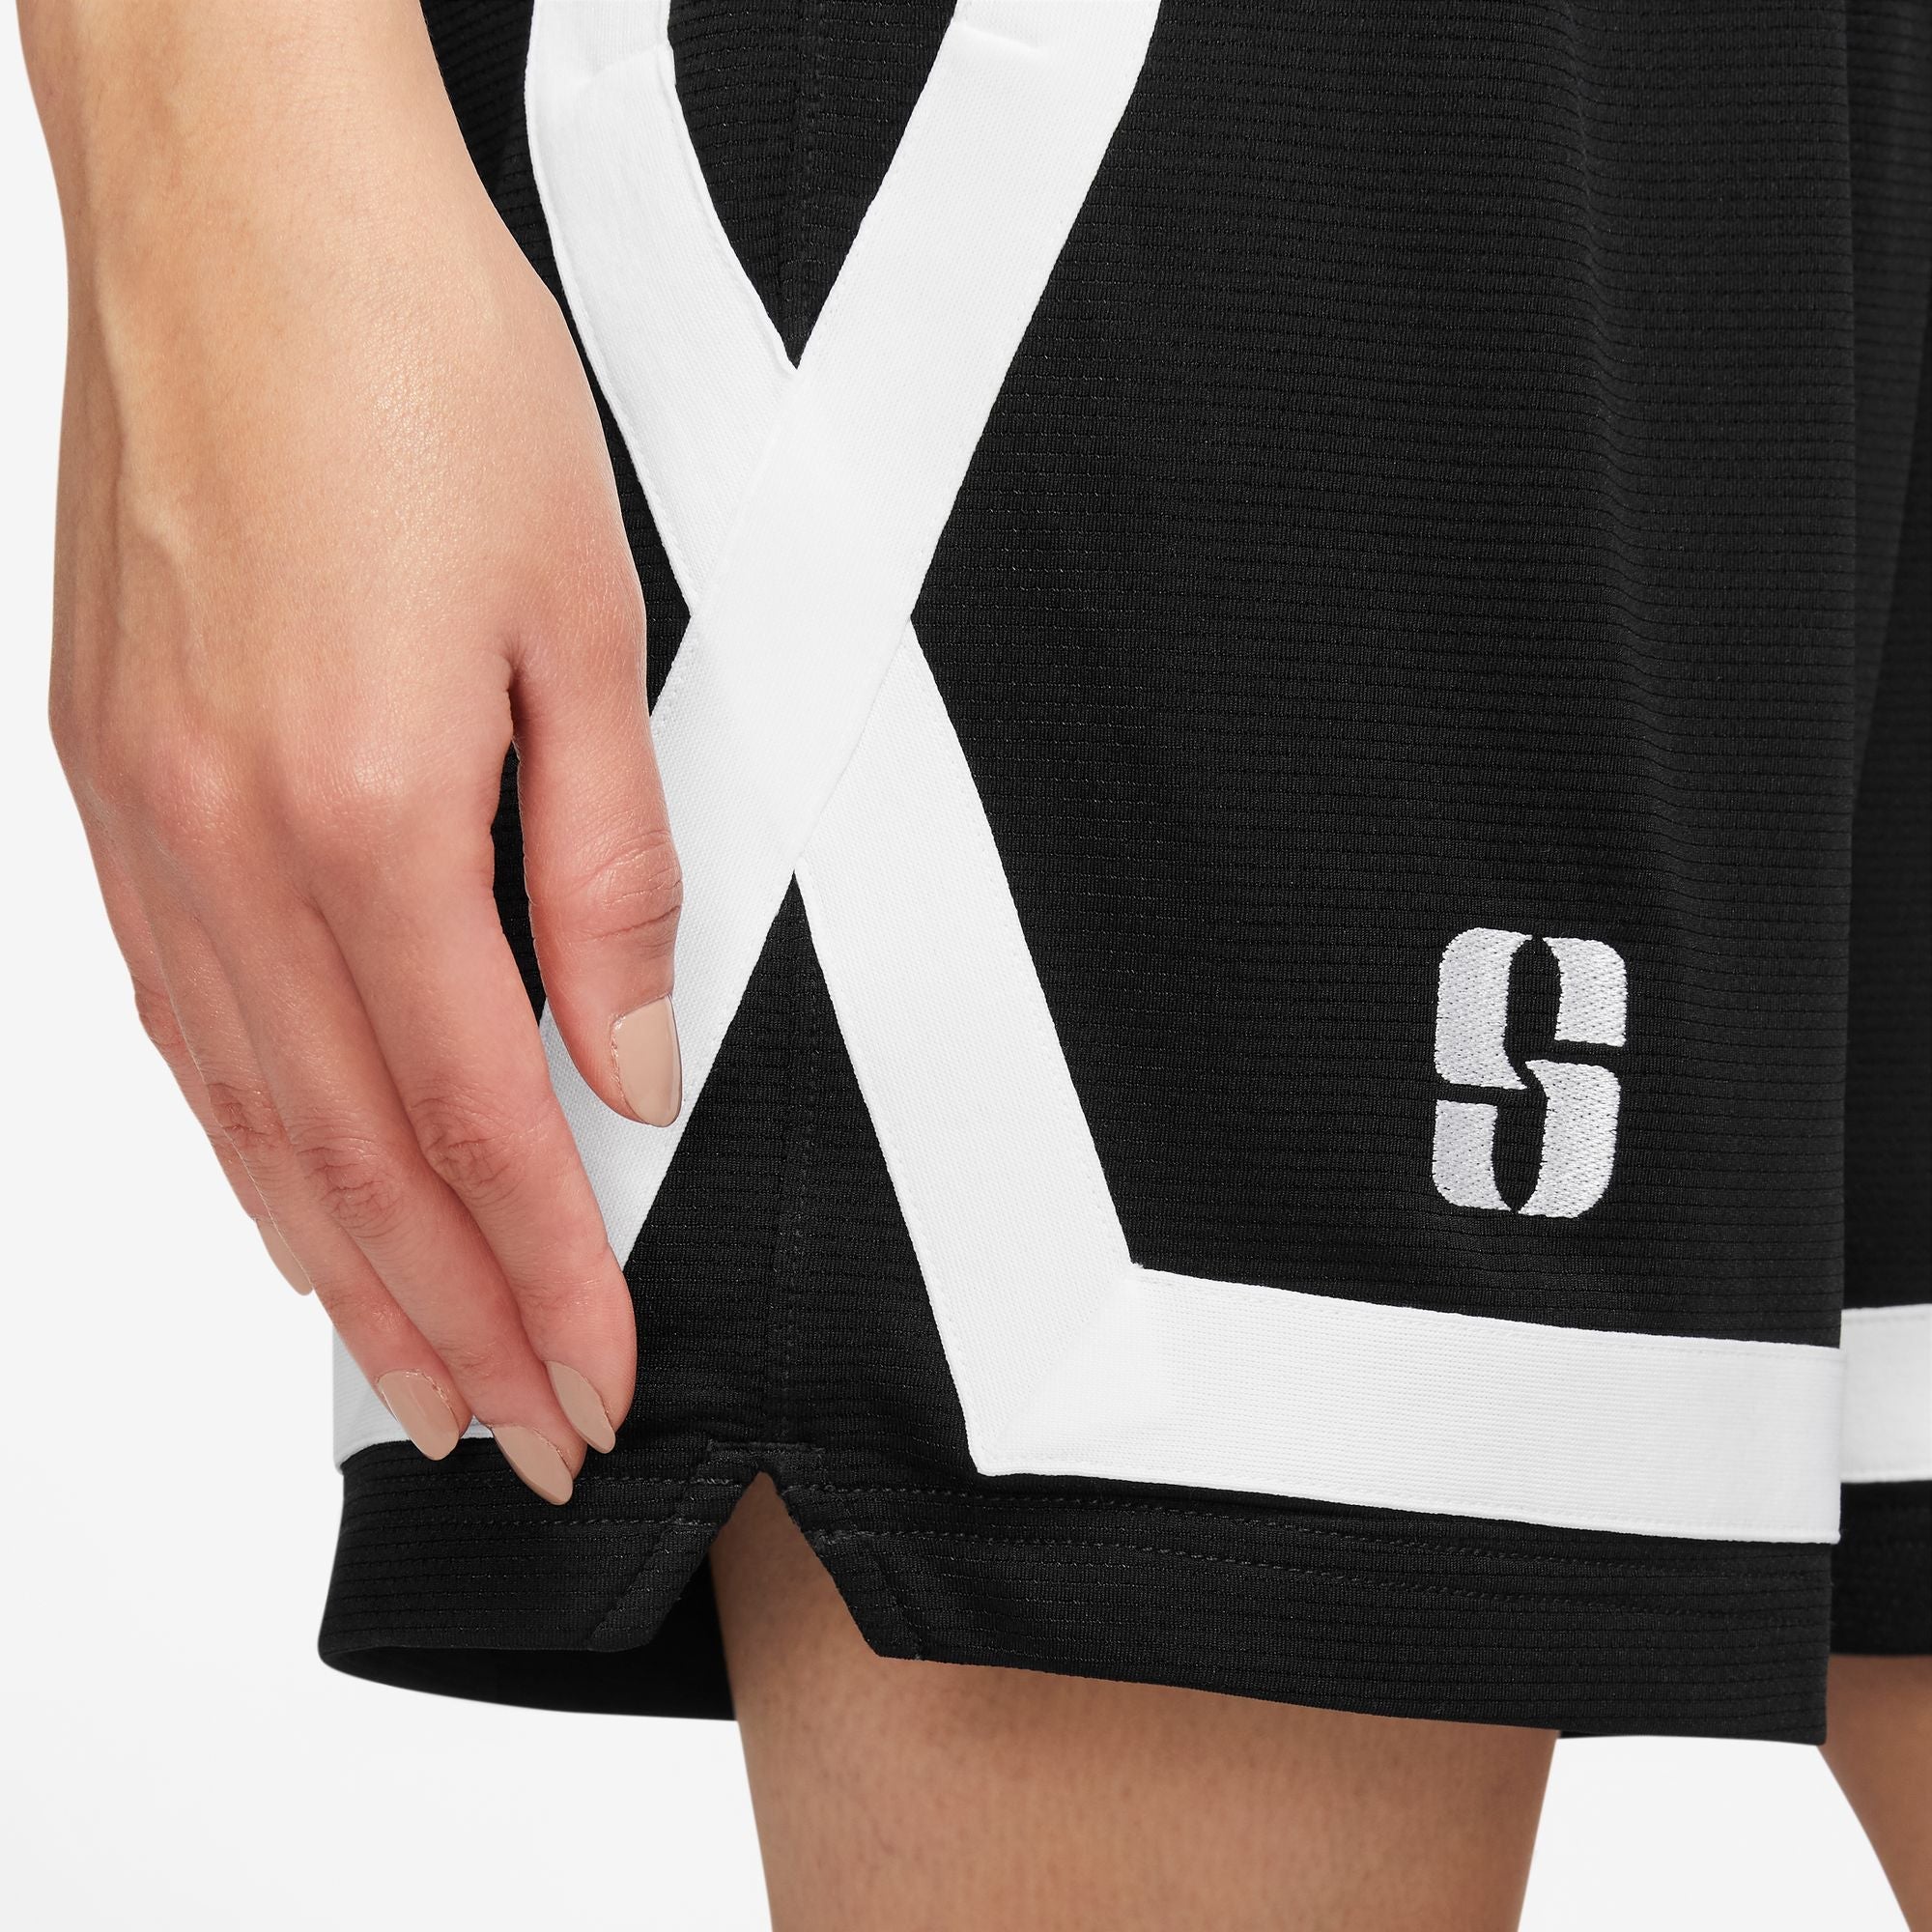 Sabrina Dri-FIT Basketball Shorts.